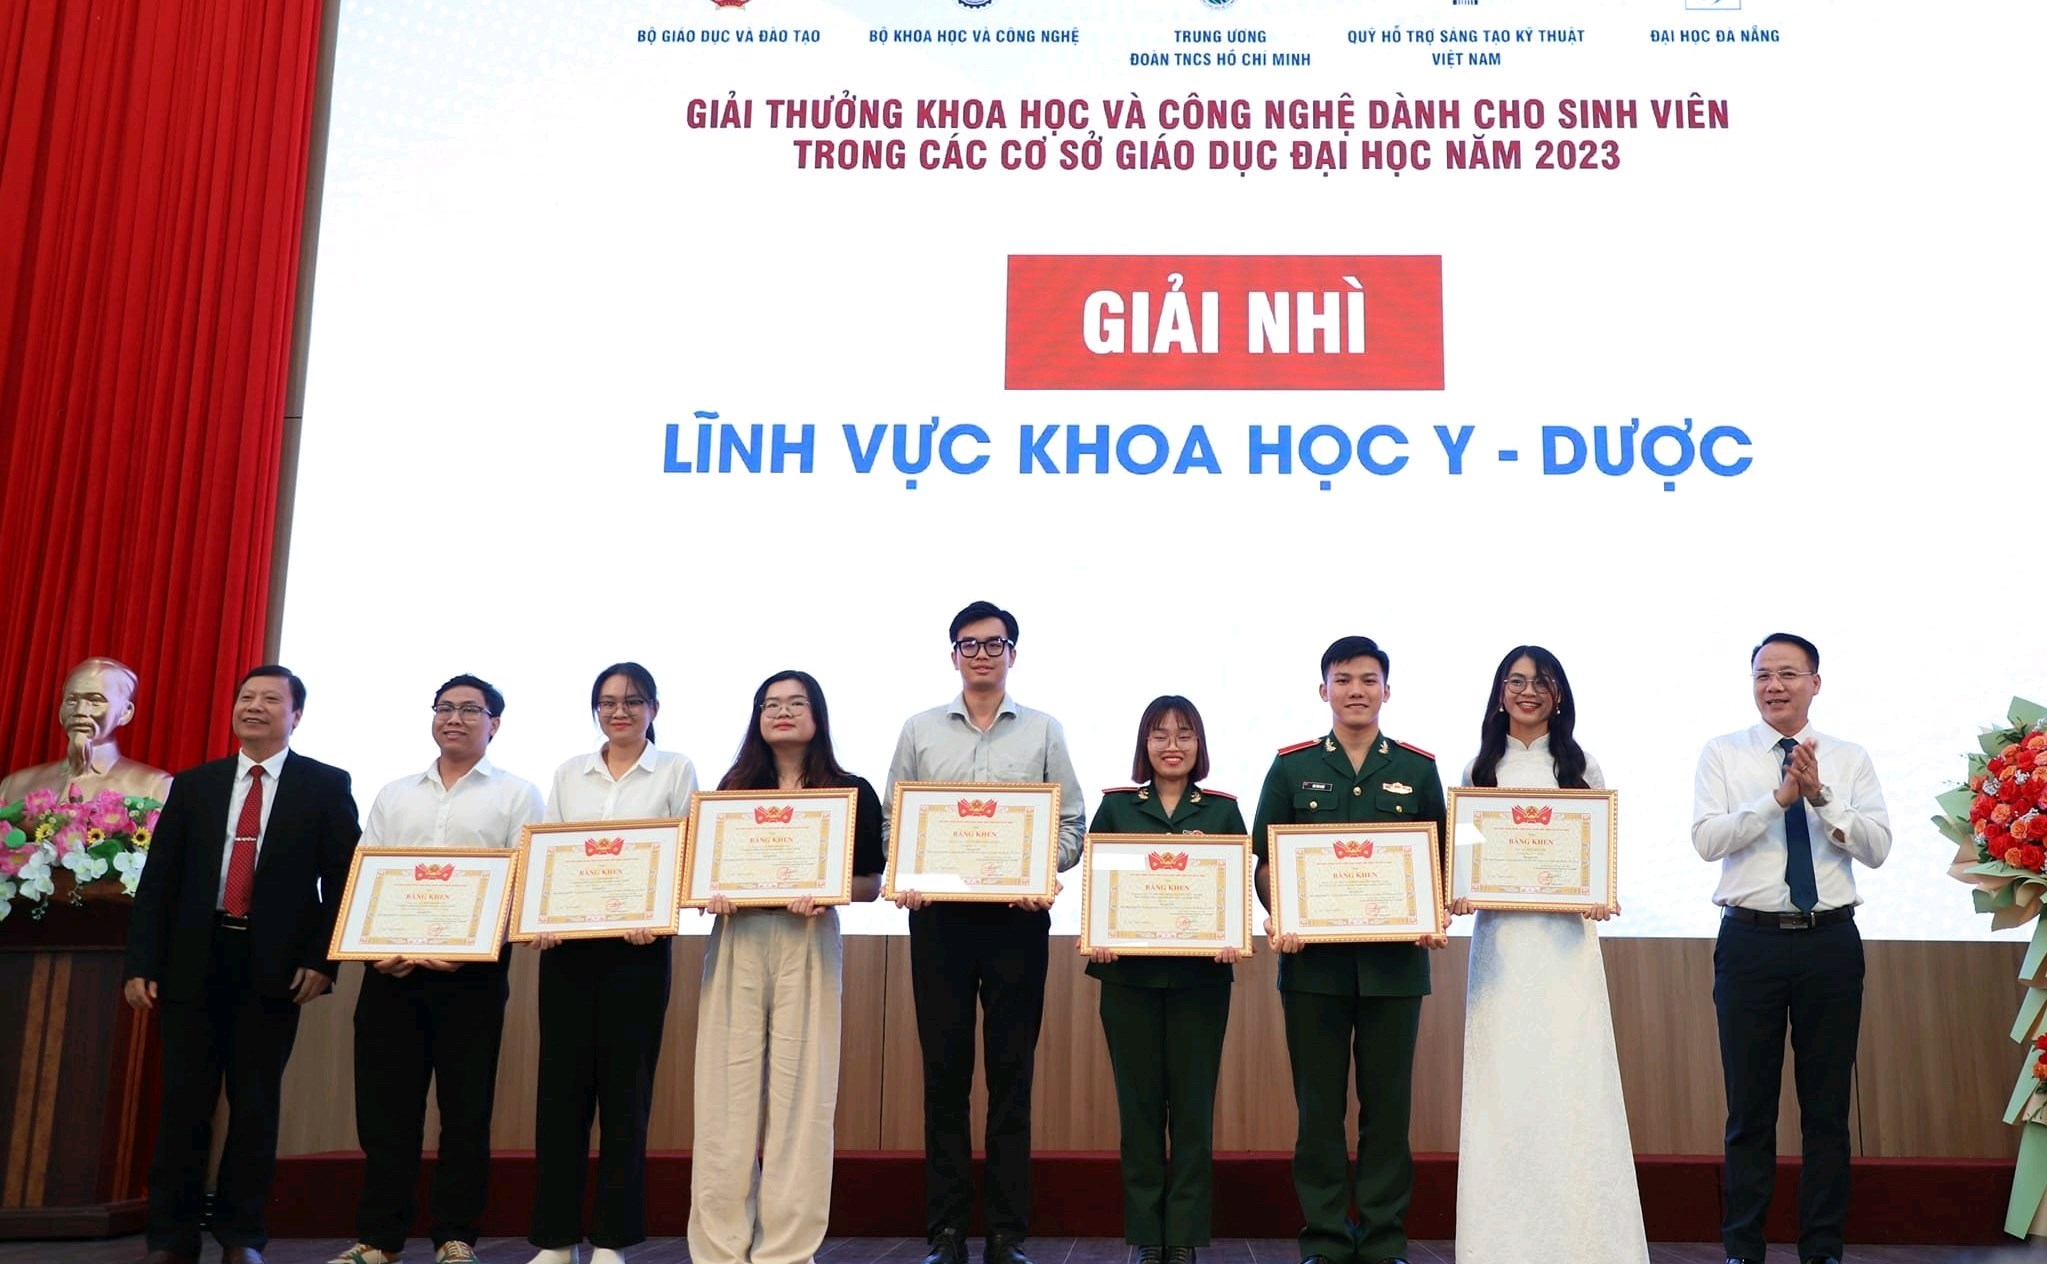 Sinh viên Trường Y Dược - Đại học Duy Tân đạt Giải thưởng Khoa học và Công nghệ dành cho sinh viên các cơ sở giáo dục đại học năm 2023